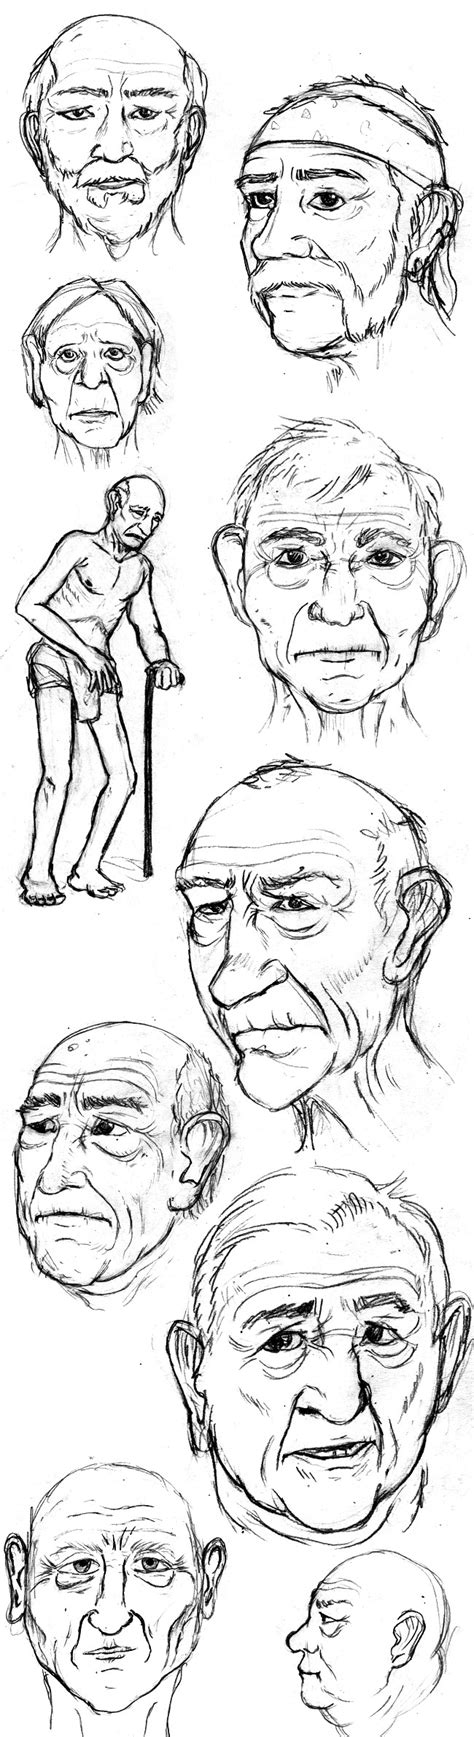 Dibujando Ancianos Y Barbas En El Curso De Dibujo De Academia C10